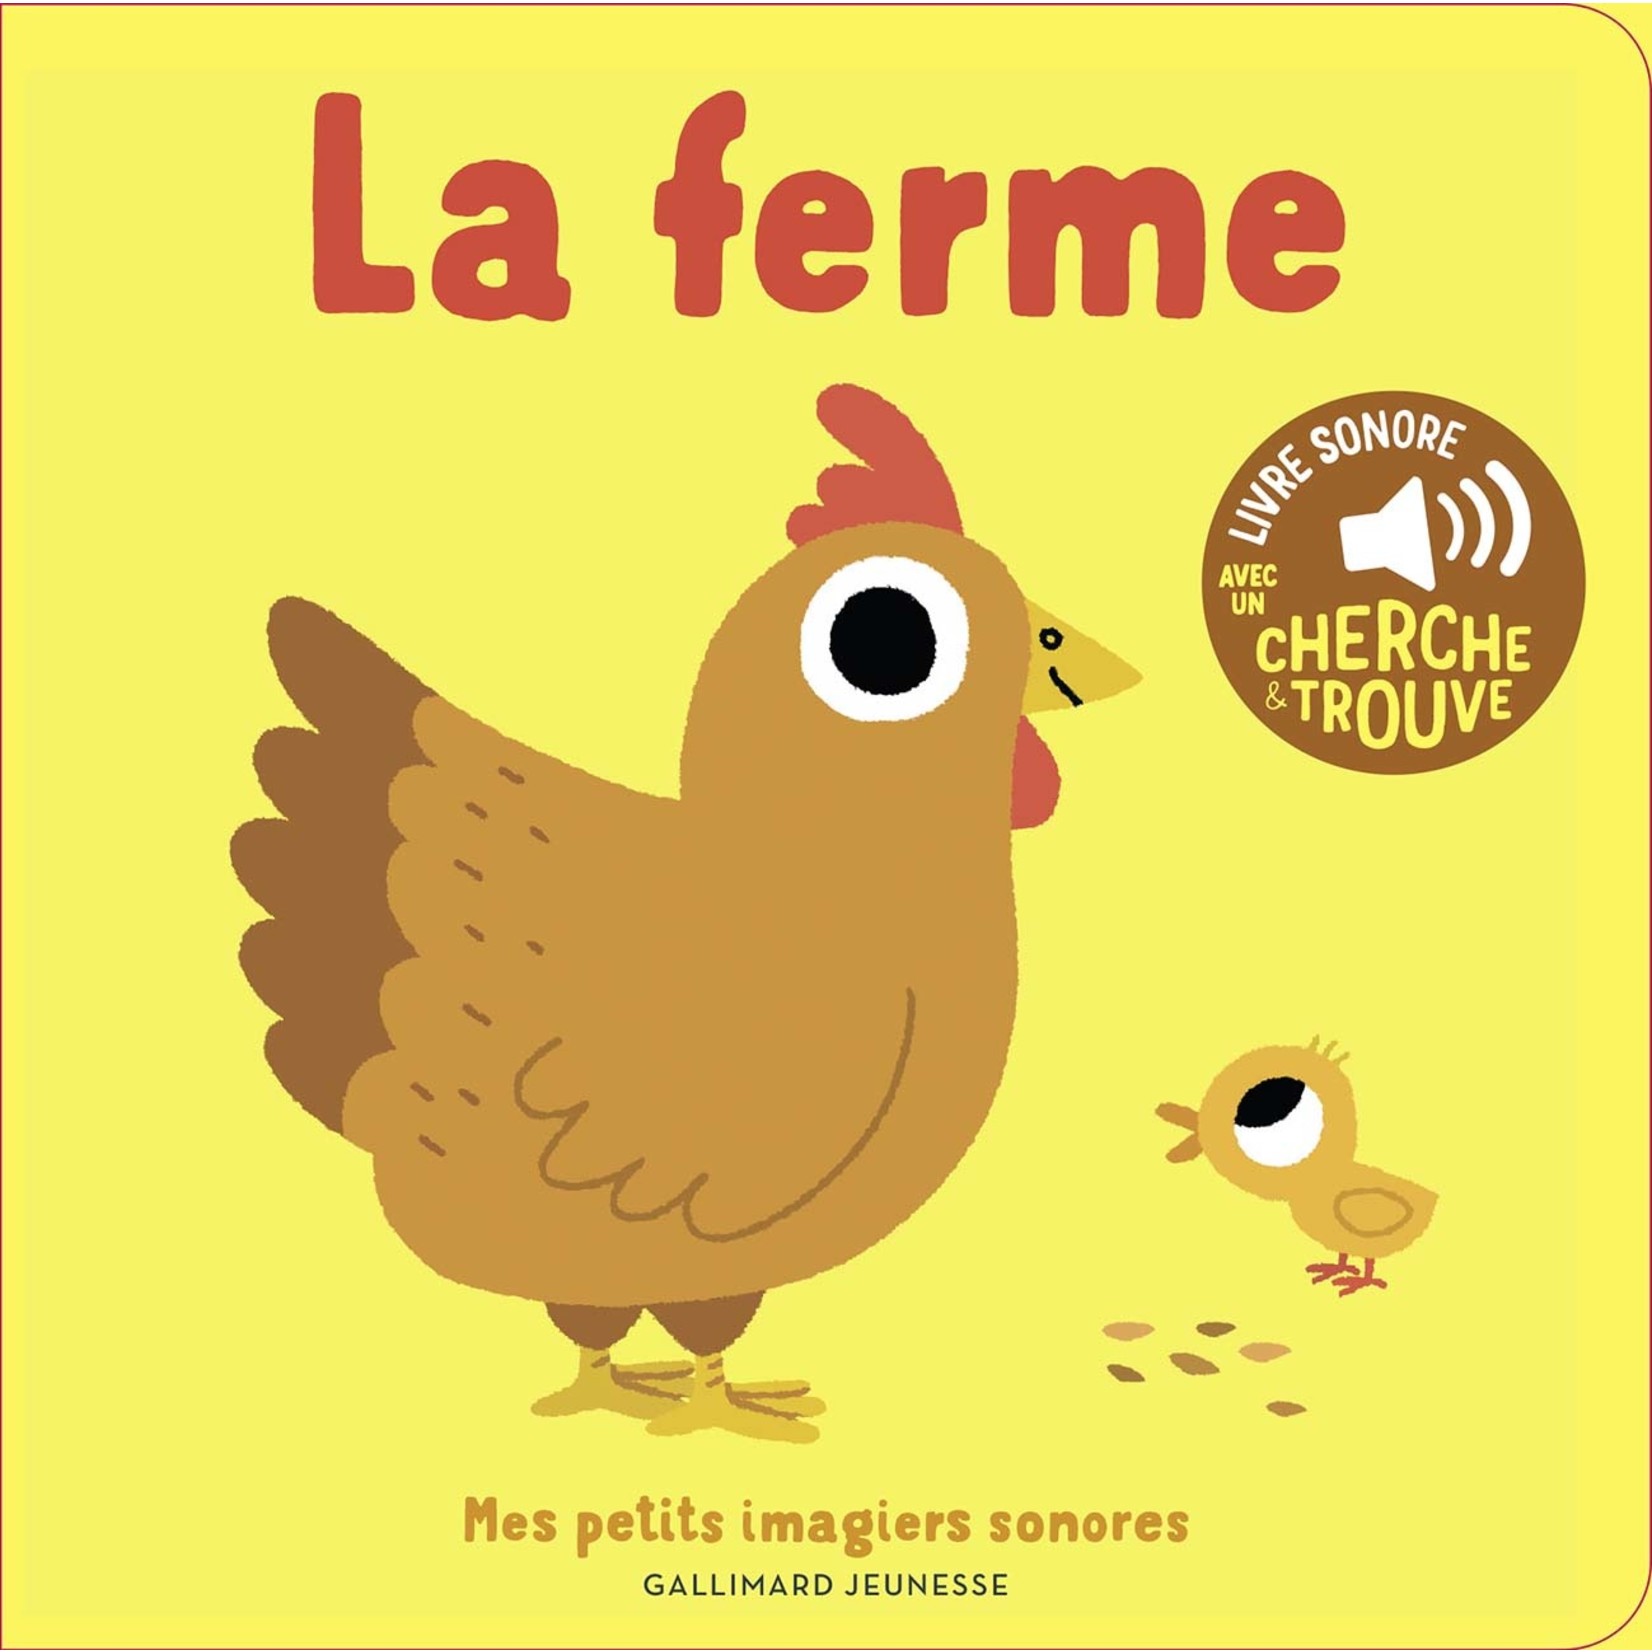 Gallimard Jeunesse (Éditions) GALLIMARD JEUNESSE - Mes imagiers sonores - La ferme (avec un cherche et trouve) in French